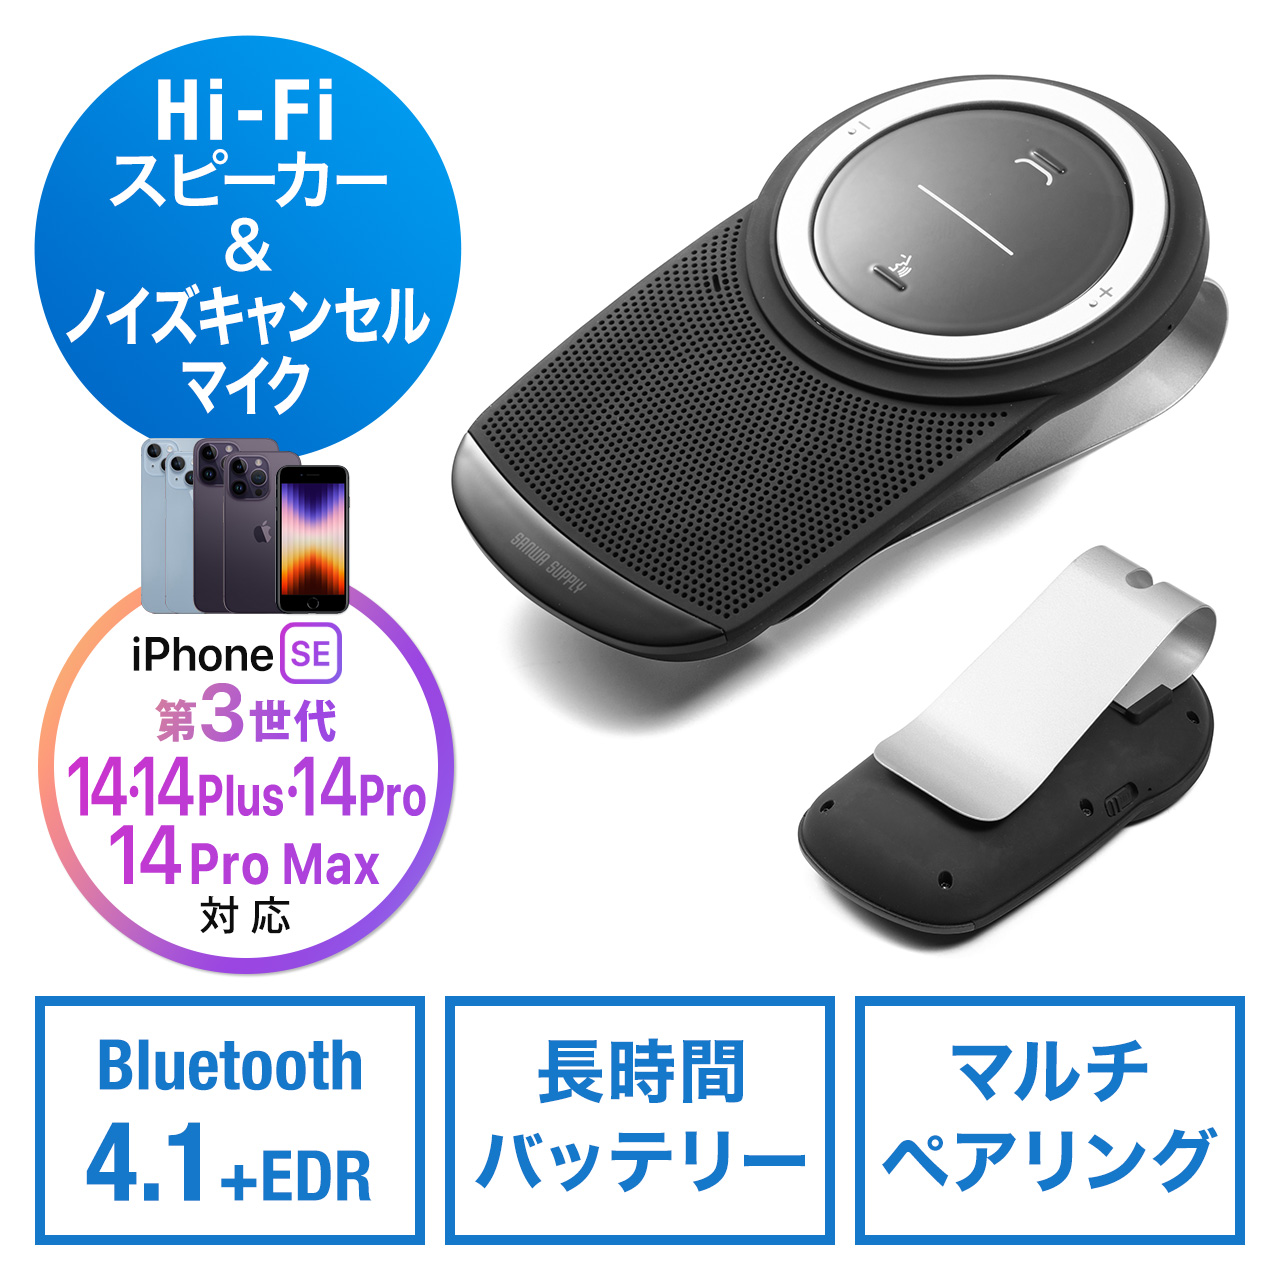 意識 数 確立します 車 と Iphone Bluetooth Nishino Cl Jp